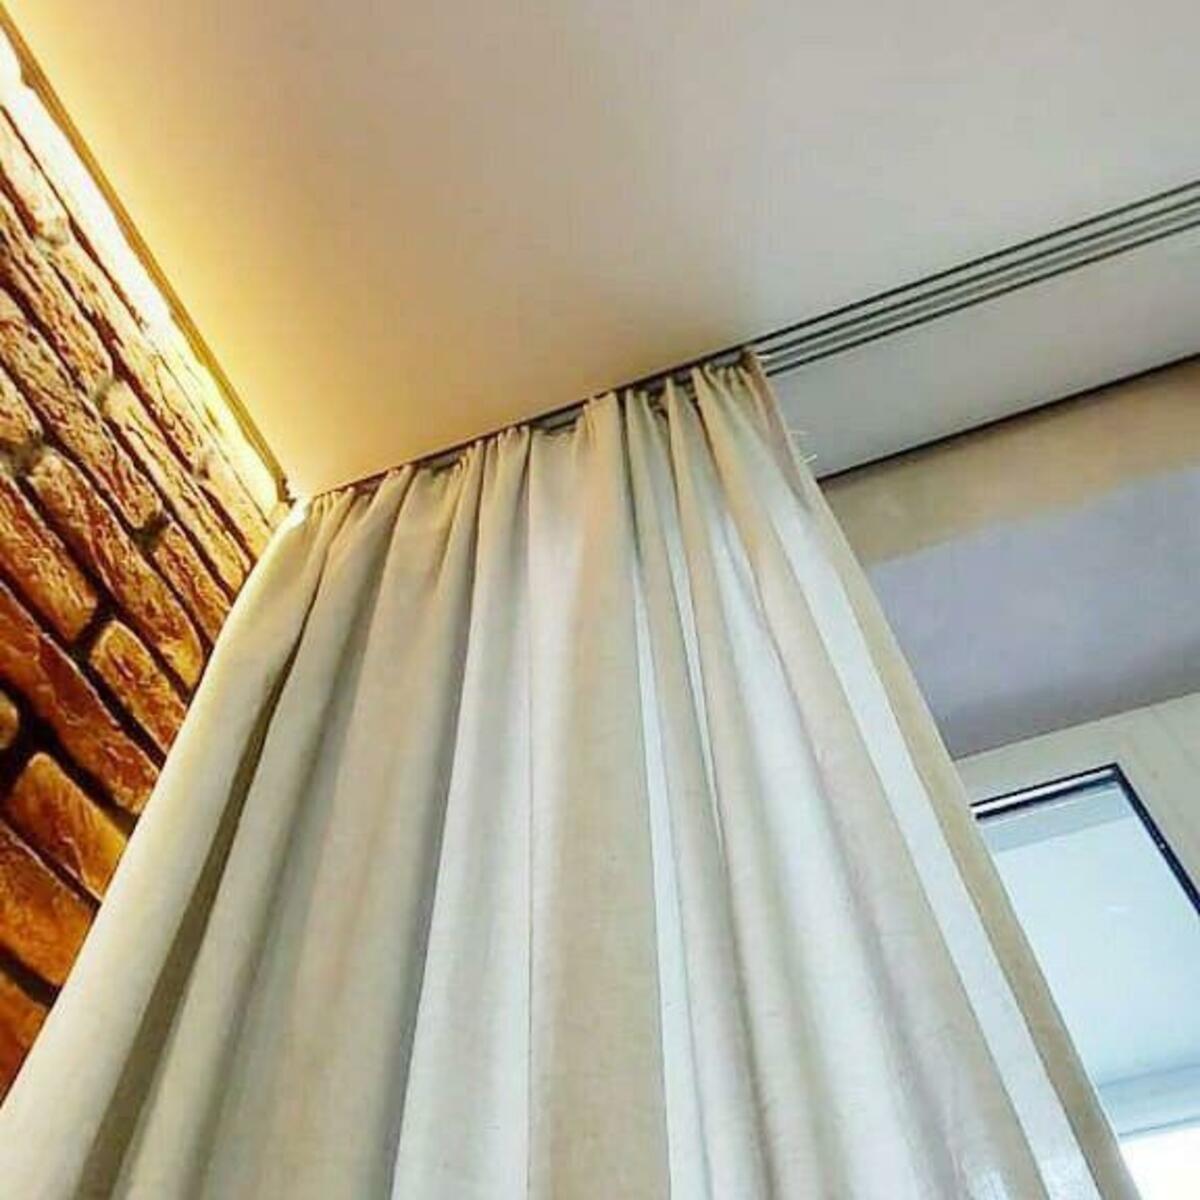 Натяжной потолок со скрытым карнизом для штор фото